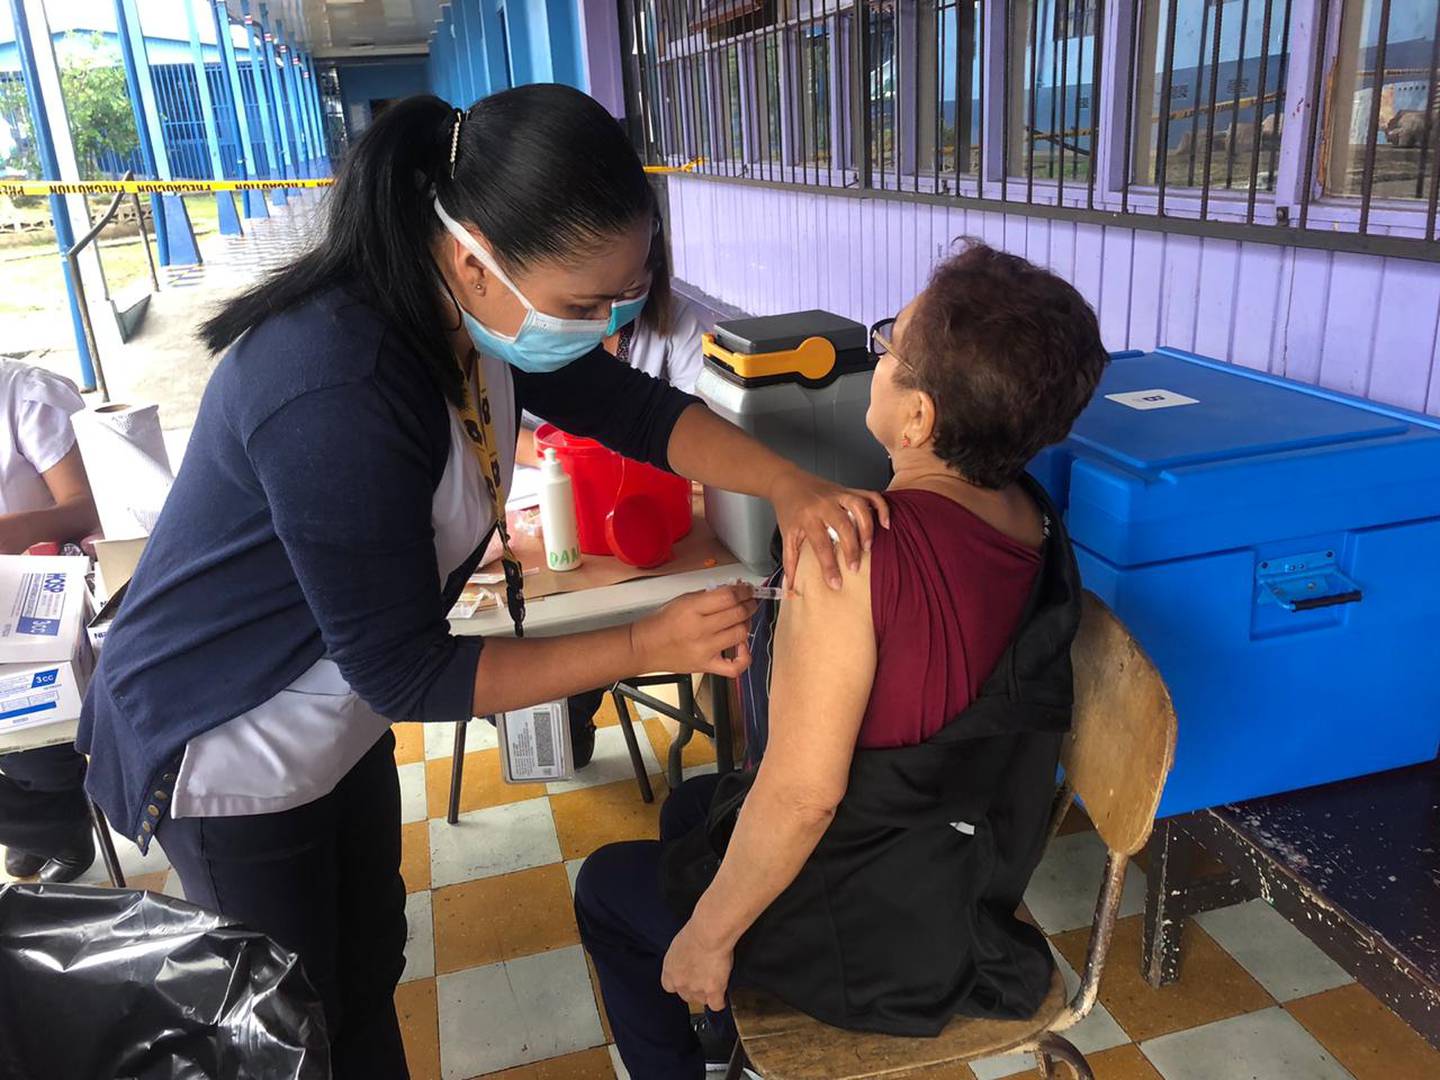 Arranca campaña de vacunación contra la influenza con la mente puesta en el coronavirus. Lavado de manos y estricto distanciamiento se respetó al máximo en clínica Moreno Cañas de barrio Cuba.